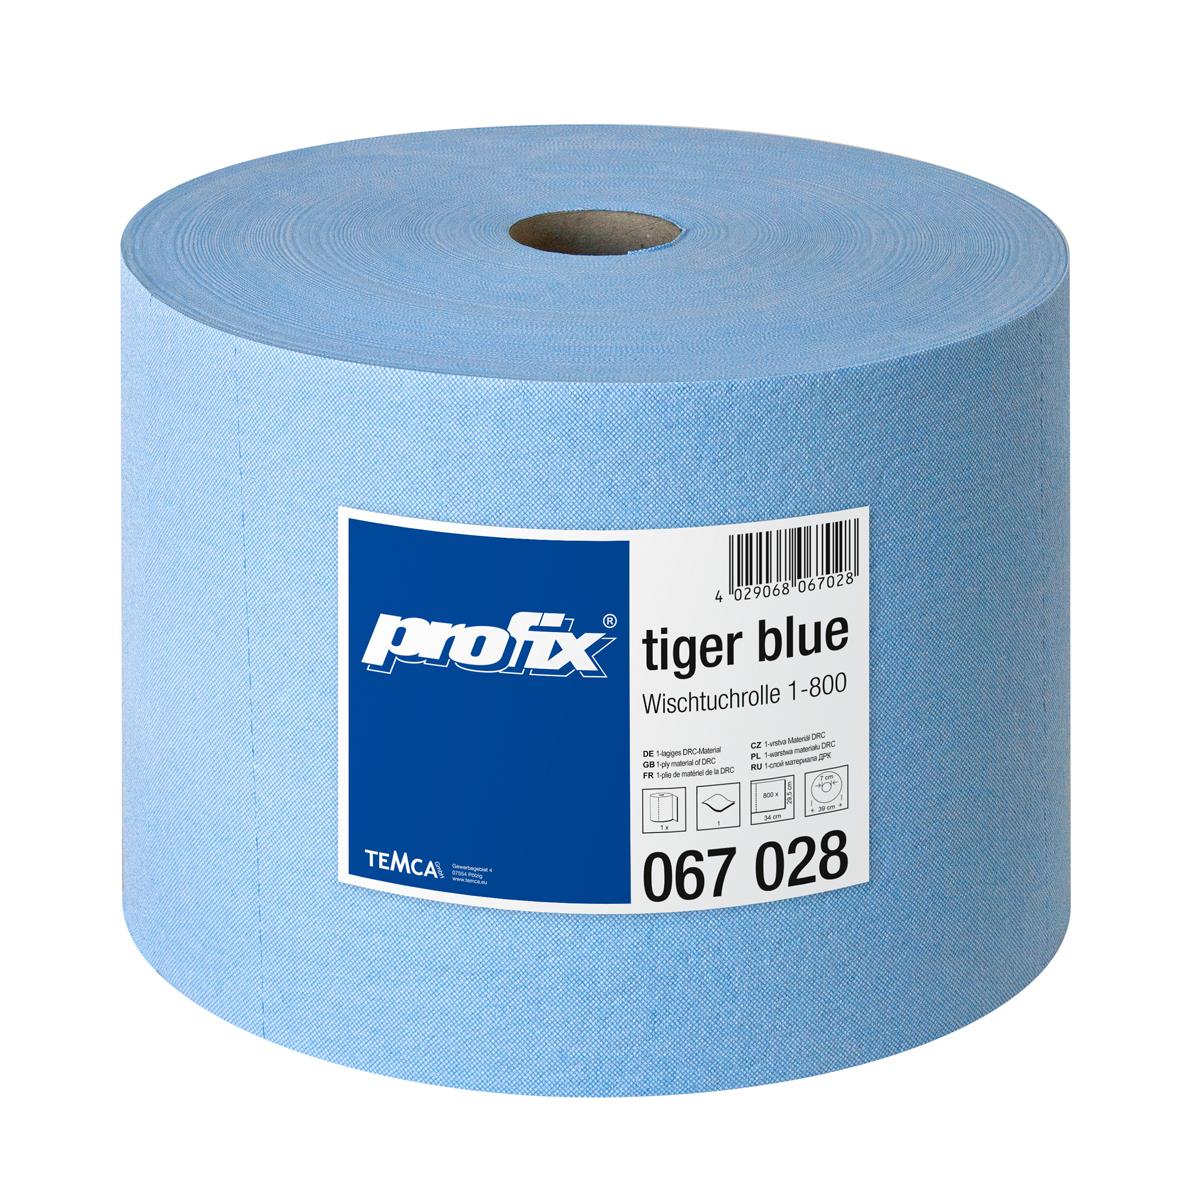 profix® tiger blue Wischtuchrolle 